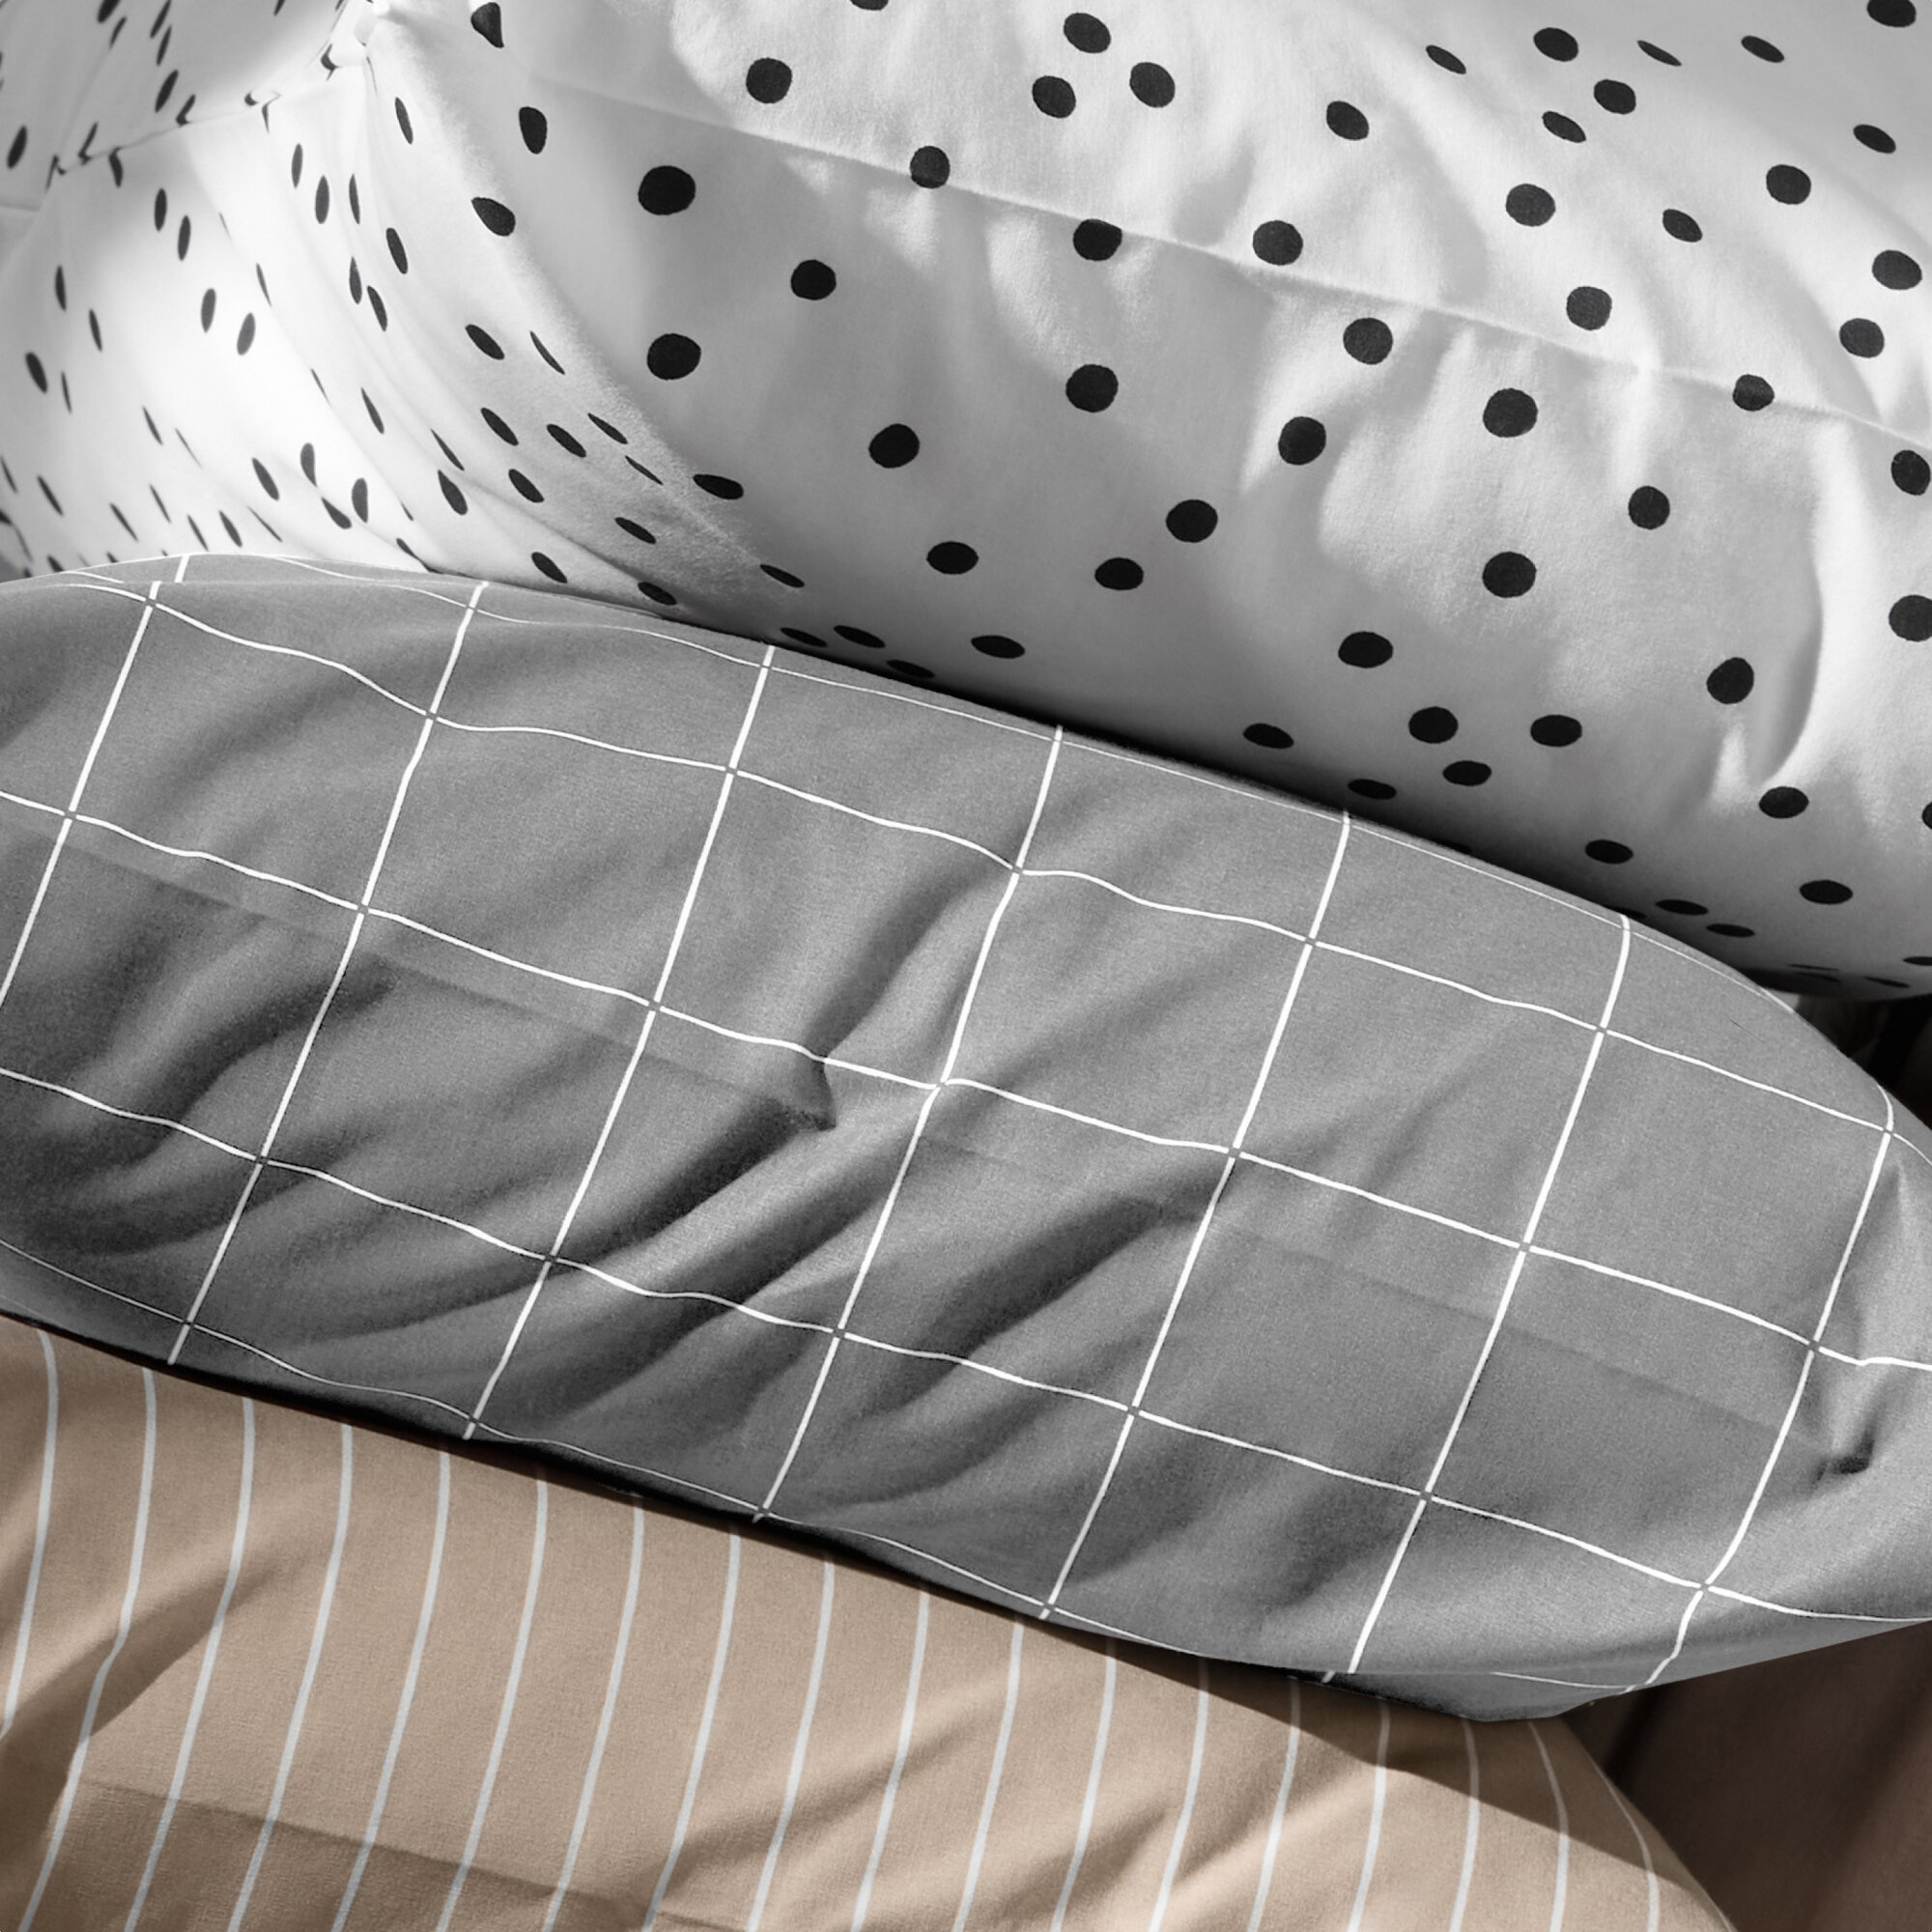 Комплект постельного белья Pragma Dipdop 1.5 спальный с простынёй, прохладный серый